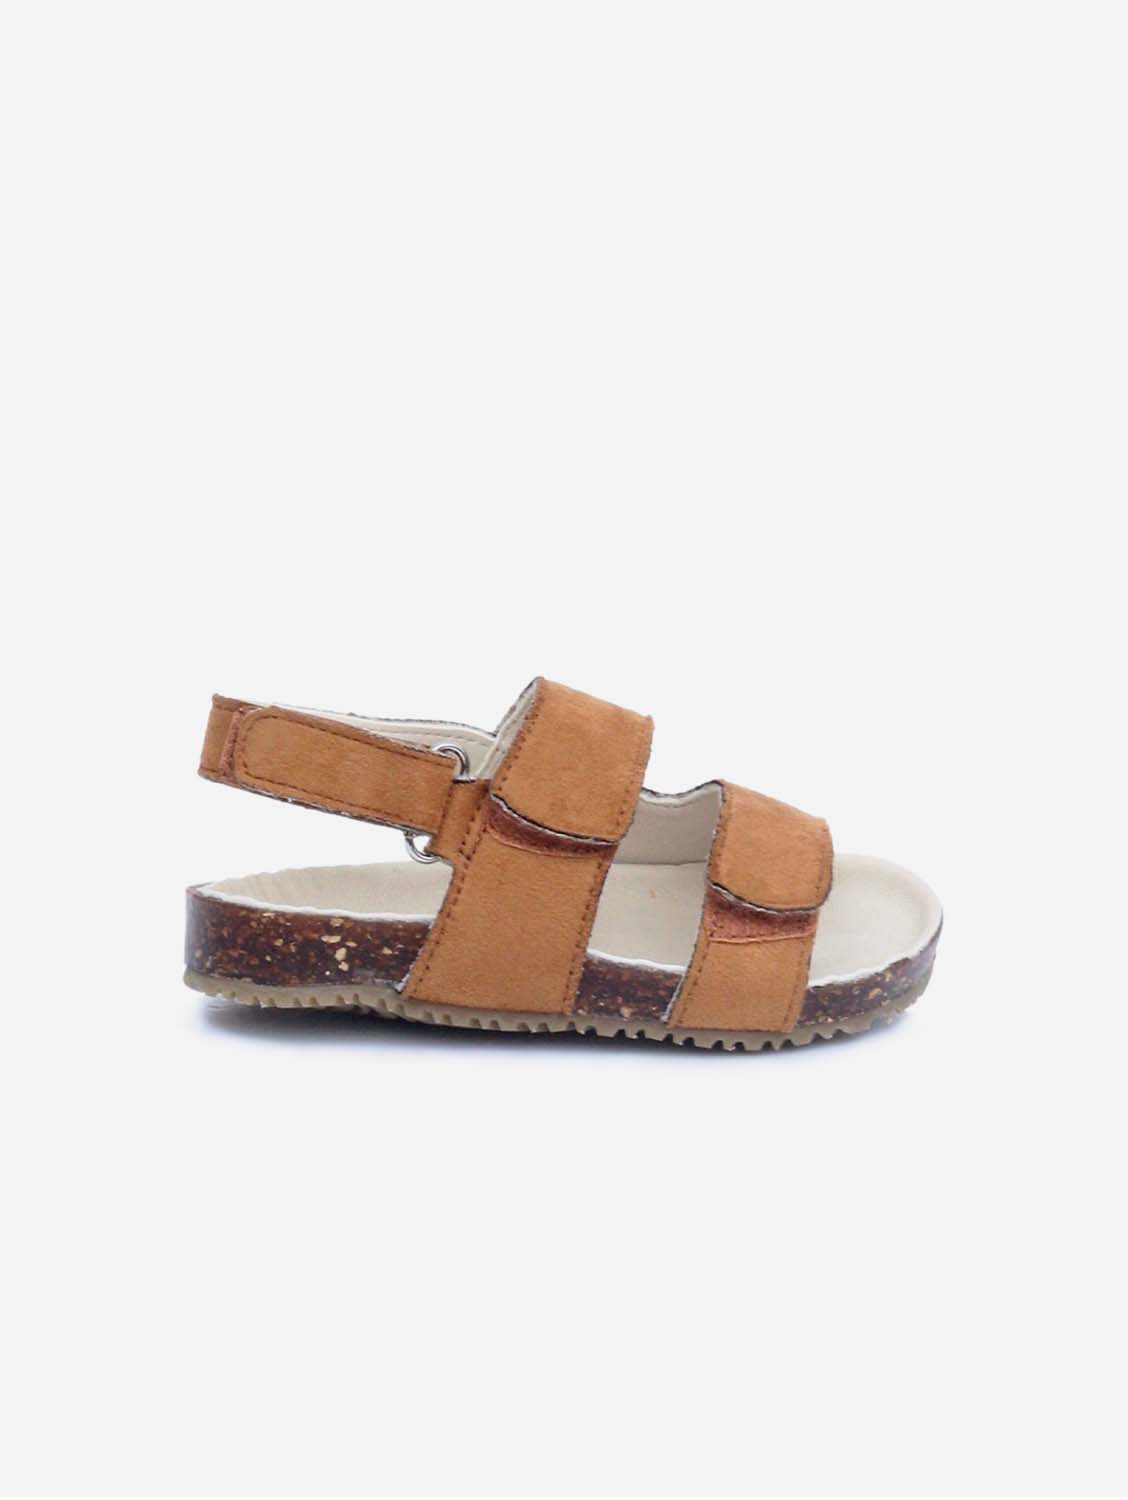 PAIZO AGAPI, Orange Strappy Sandals 21 (12.5cm)